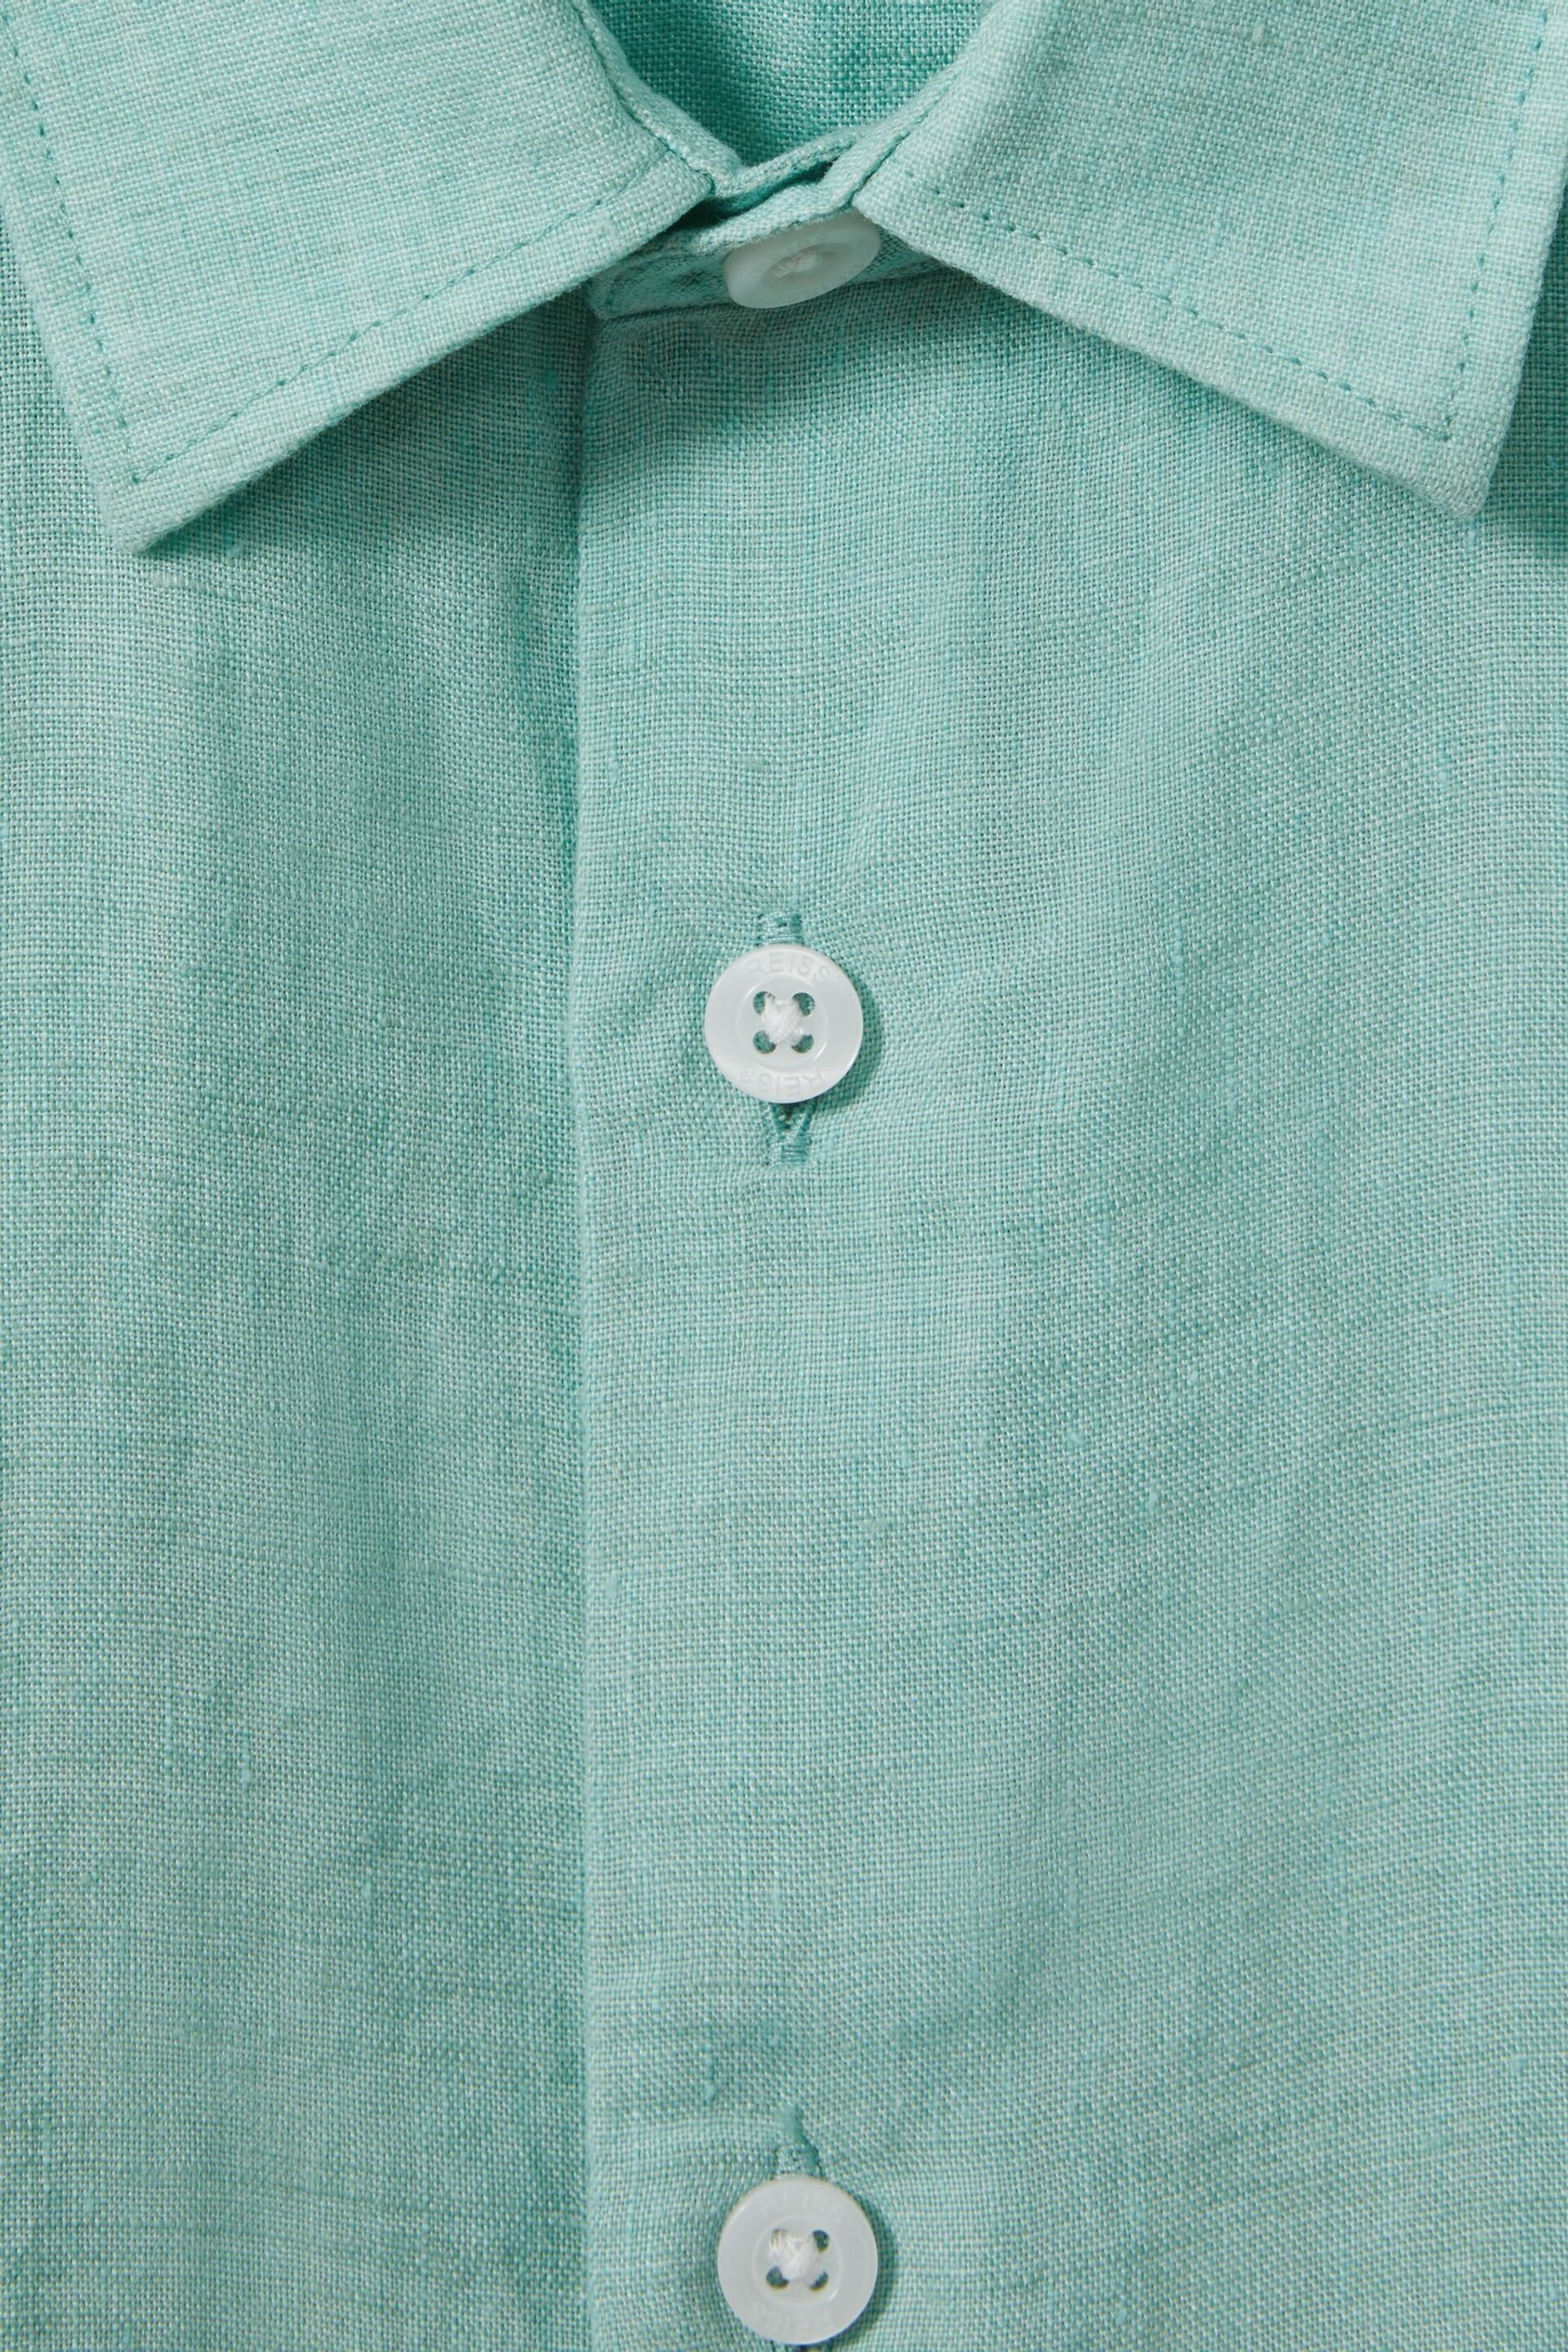 Reiss Bermuda Green Holiday Teen Short Sleeve Linen Shirt - Image 3 of 3